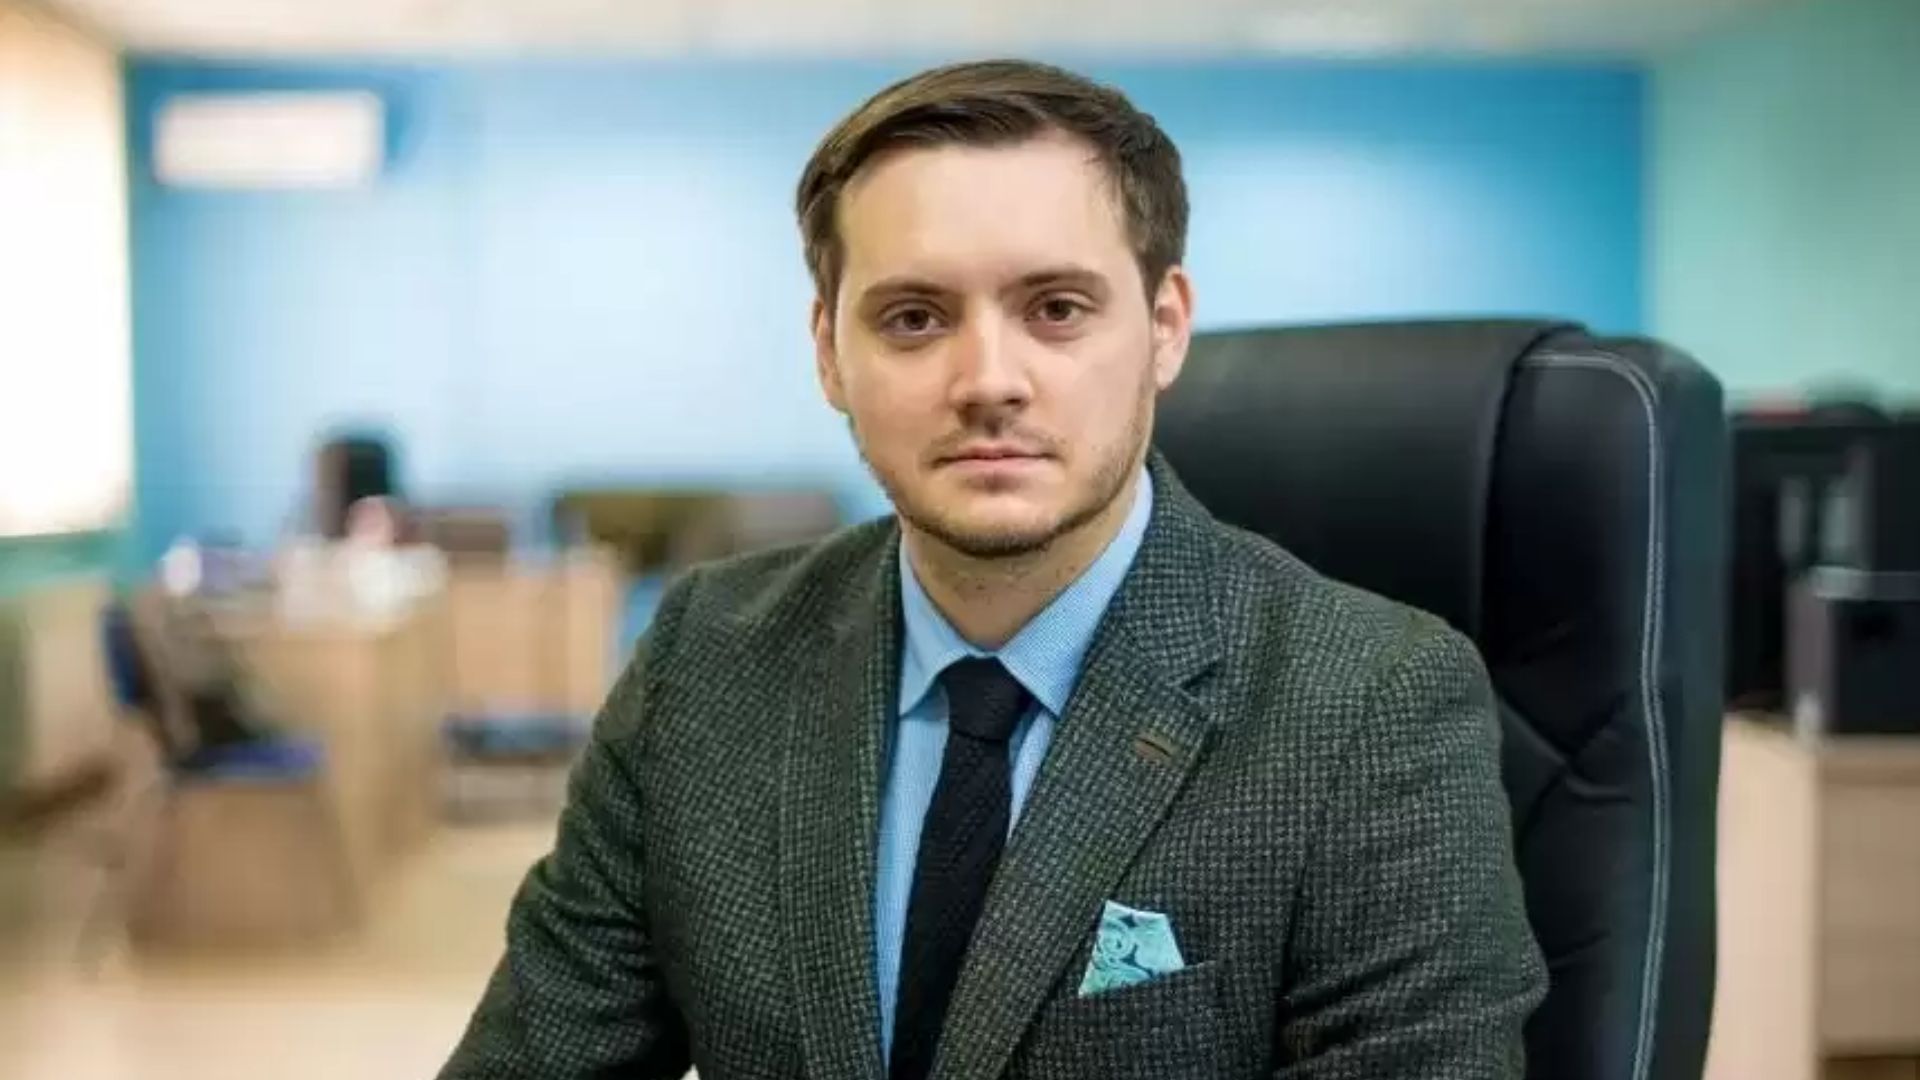 Данилов ҚР ақпарат және қоғамдық даму вице-министрі қызметінен босатылды